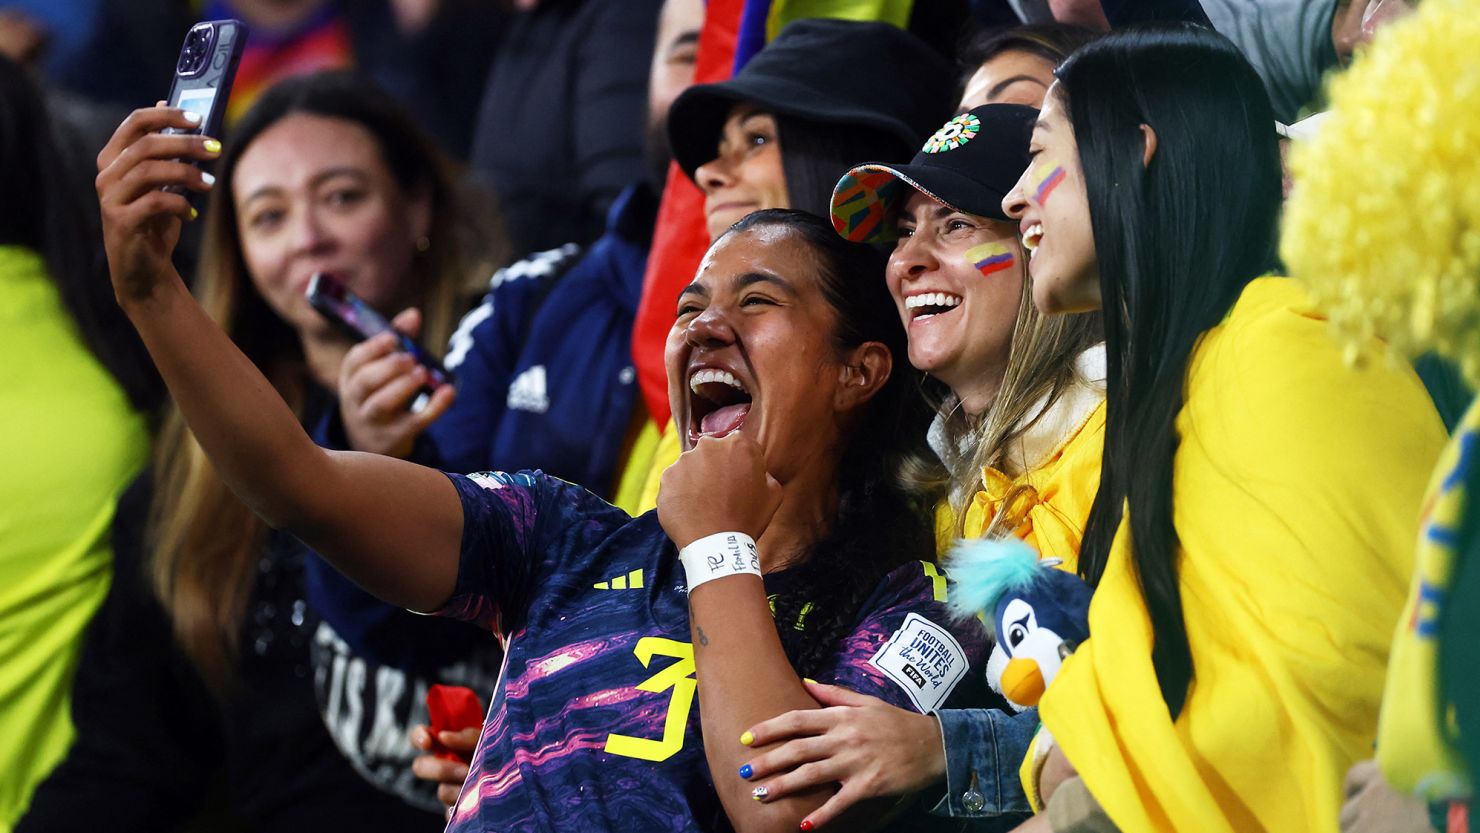 USA women hold on to top FIFA ranking spot despite European